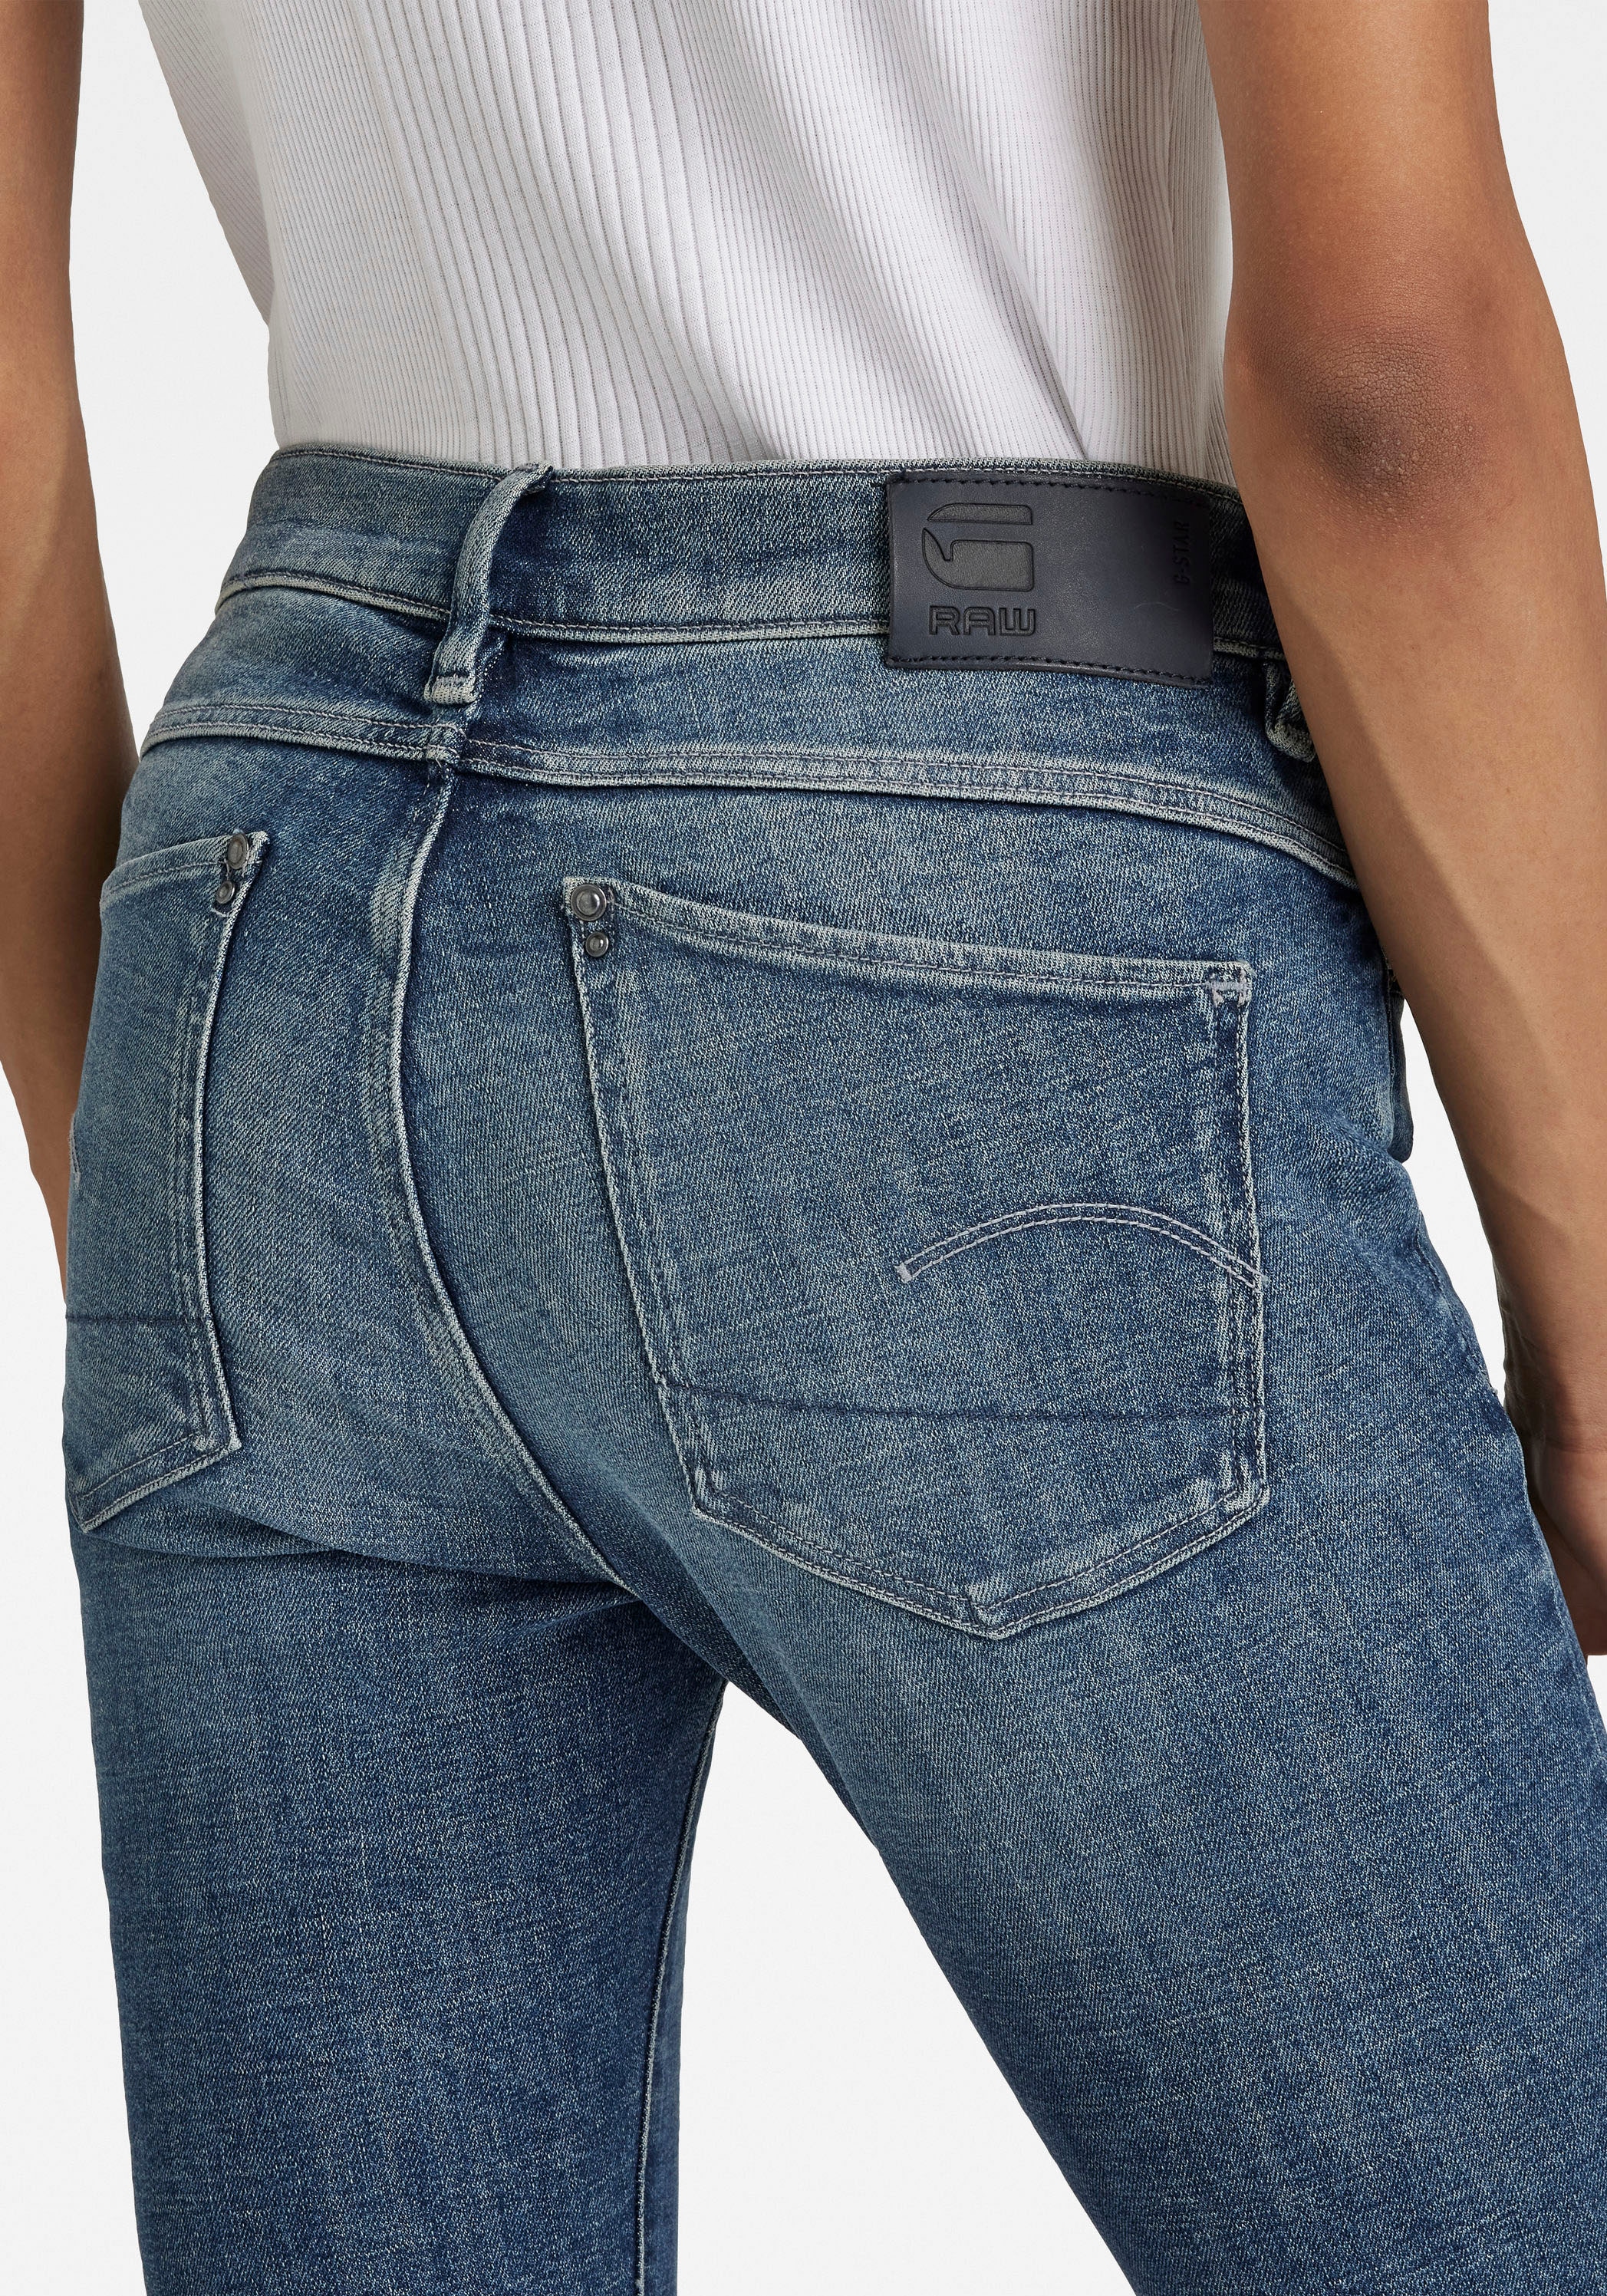 G-Star RAW Skinny-fit-Jeans, mit Wohlfühlfaktor durch Stretchanteil